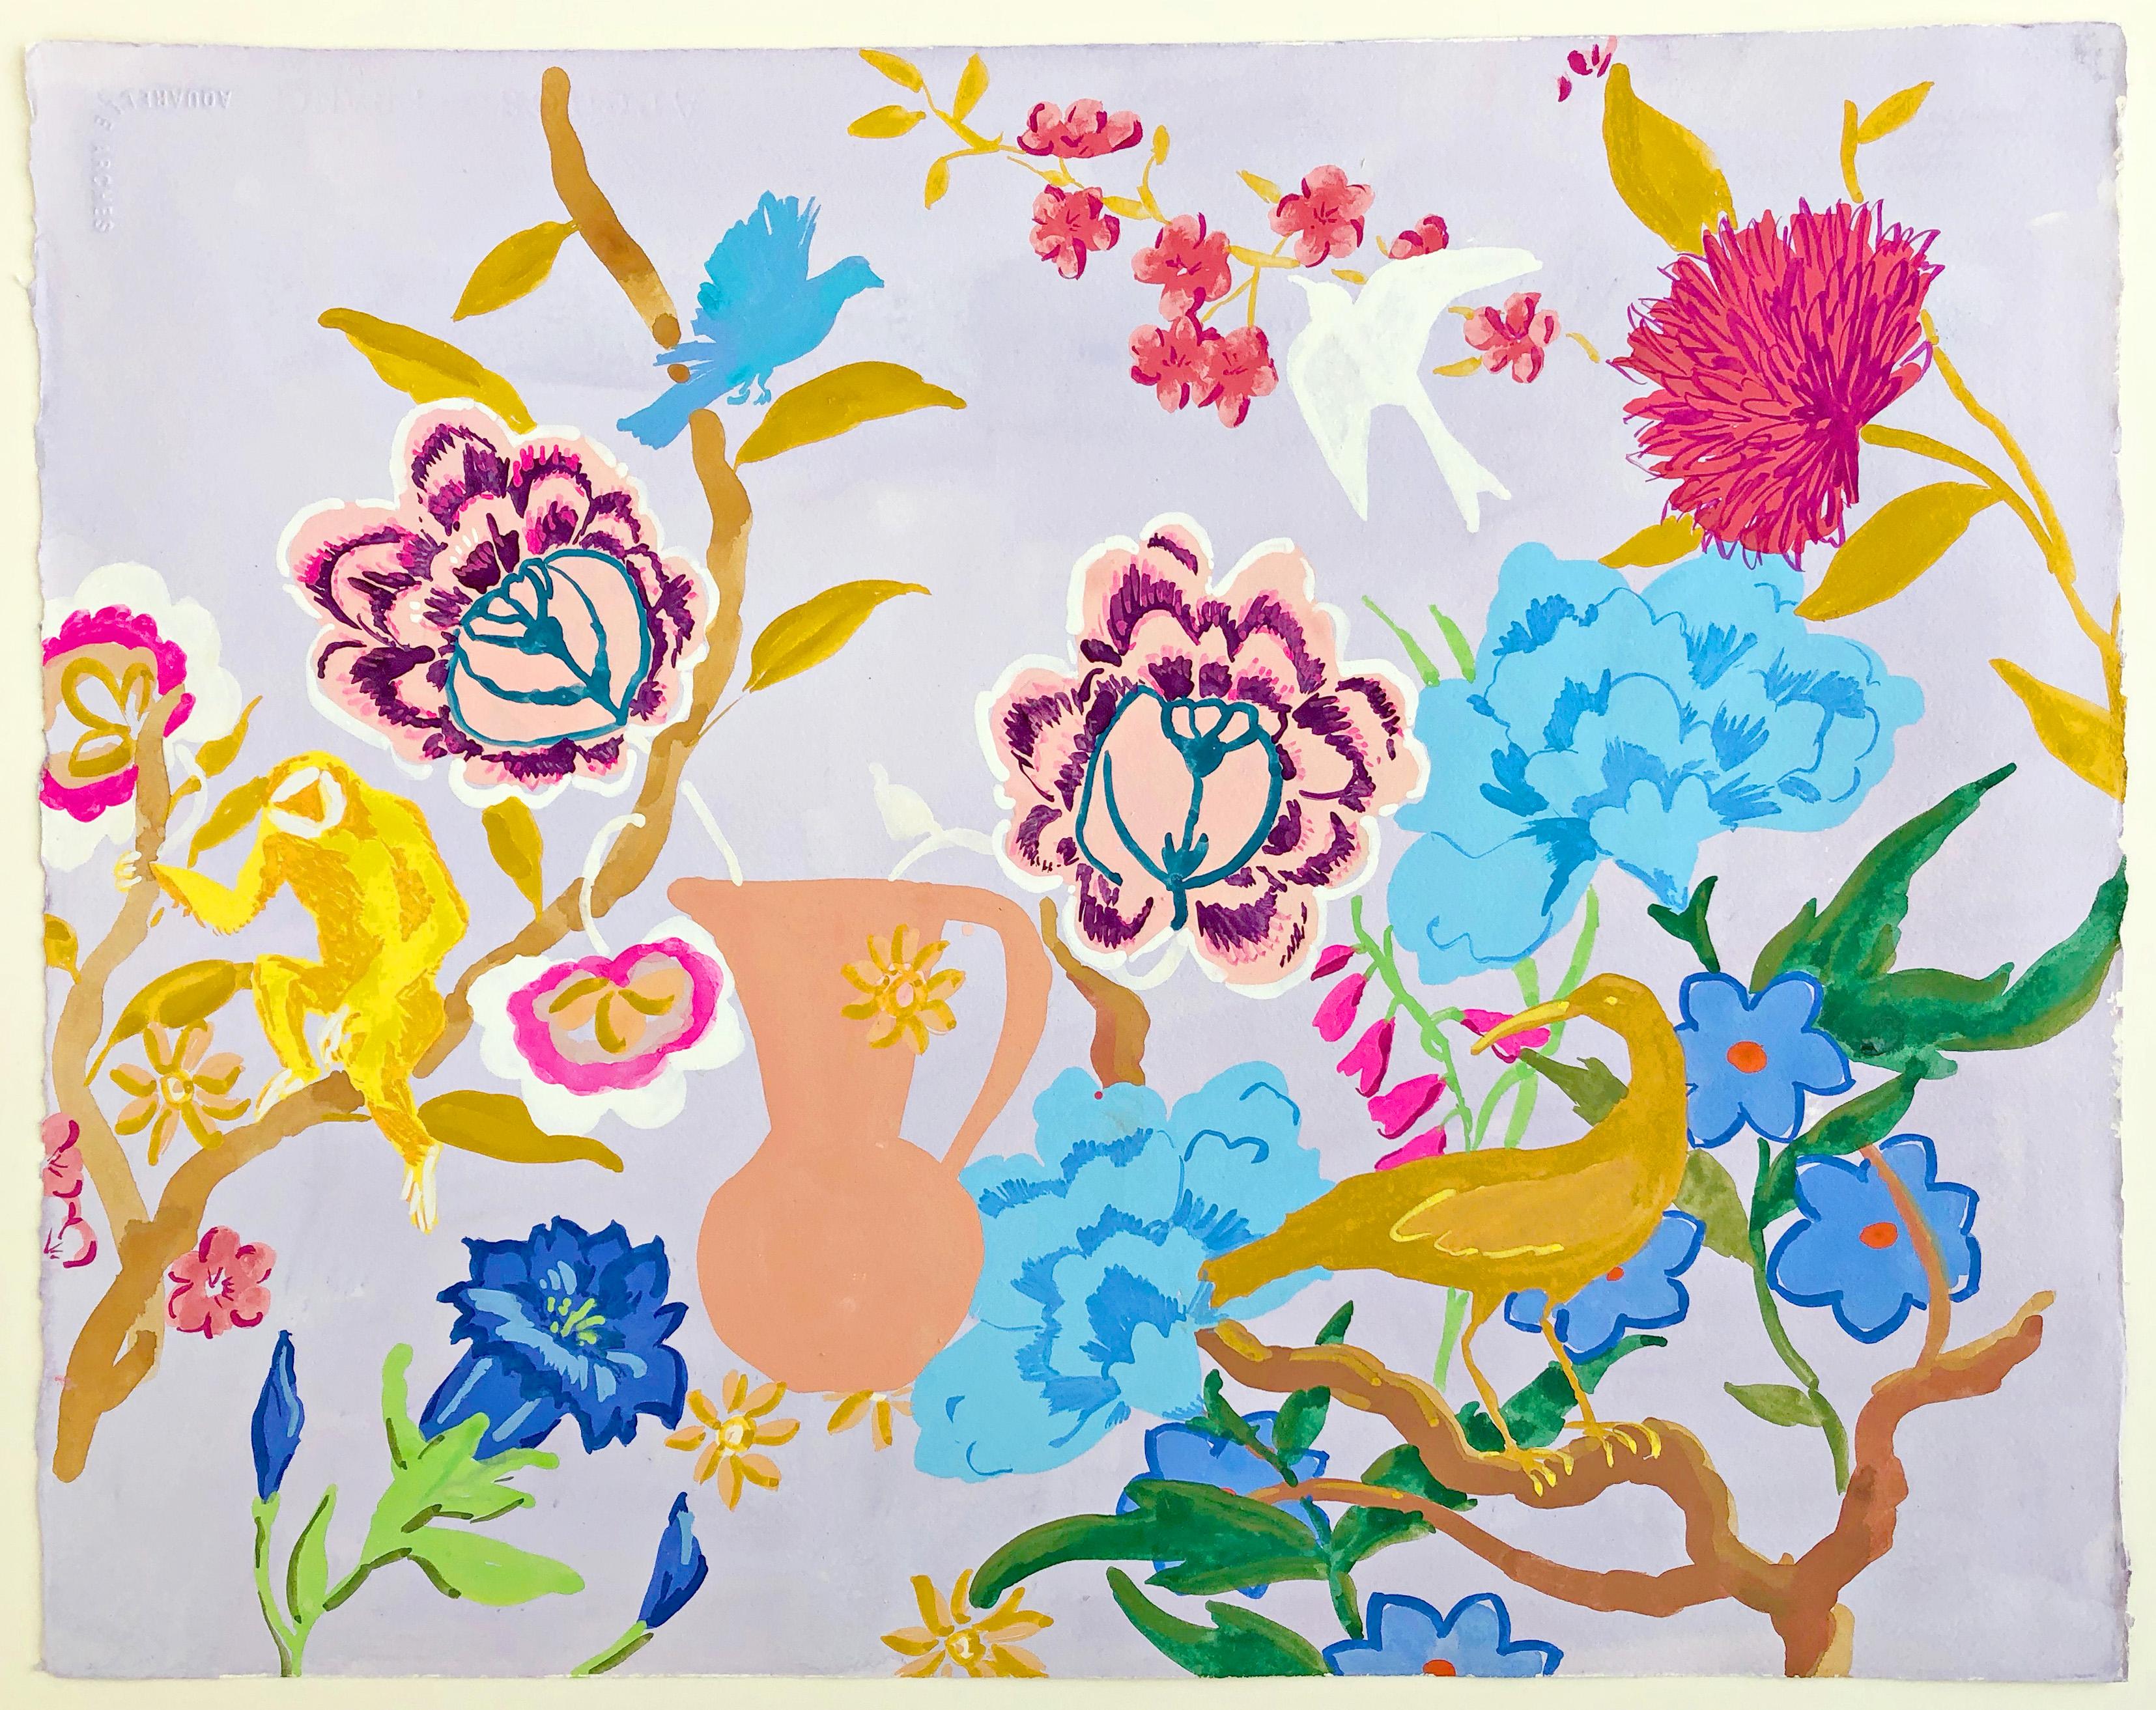 Landscape Painting Melanie Parke - Bleu Ambre, Jaune, Rose, Peinture botanique, Fleurs, Oiseaux, Singe, Jardin